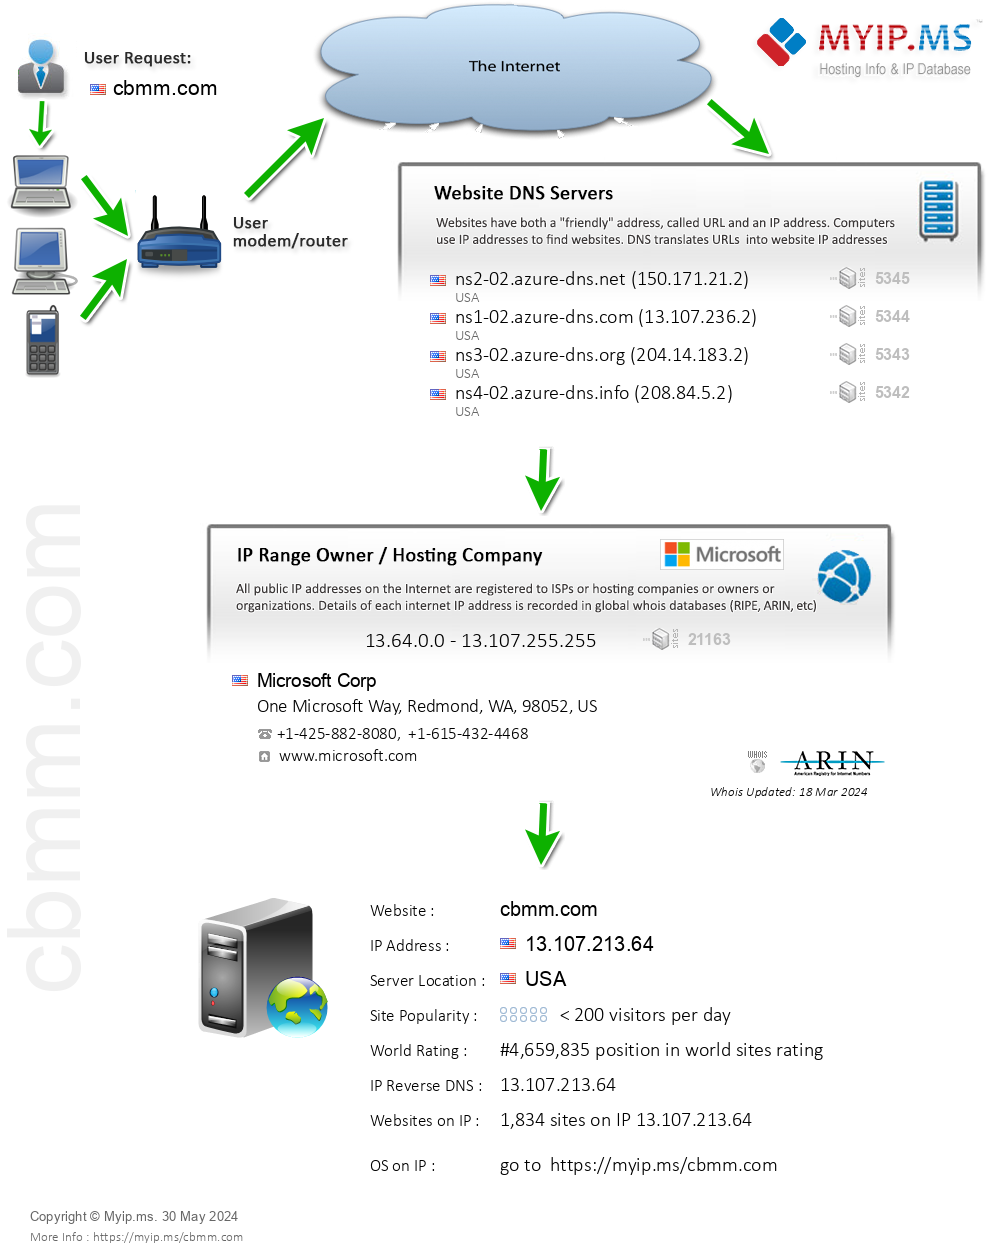 Cbmm.com - Website Hosting Visual IP Diagram